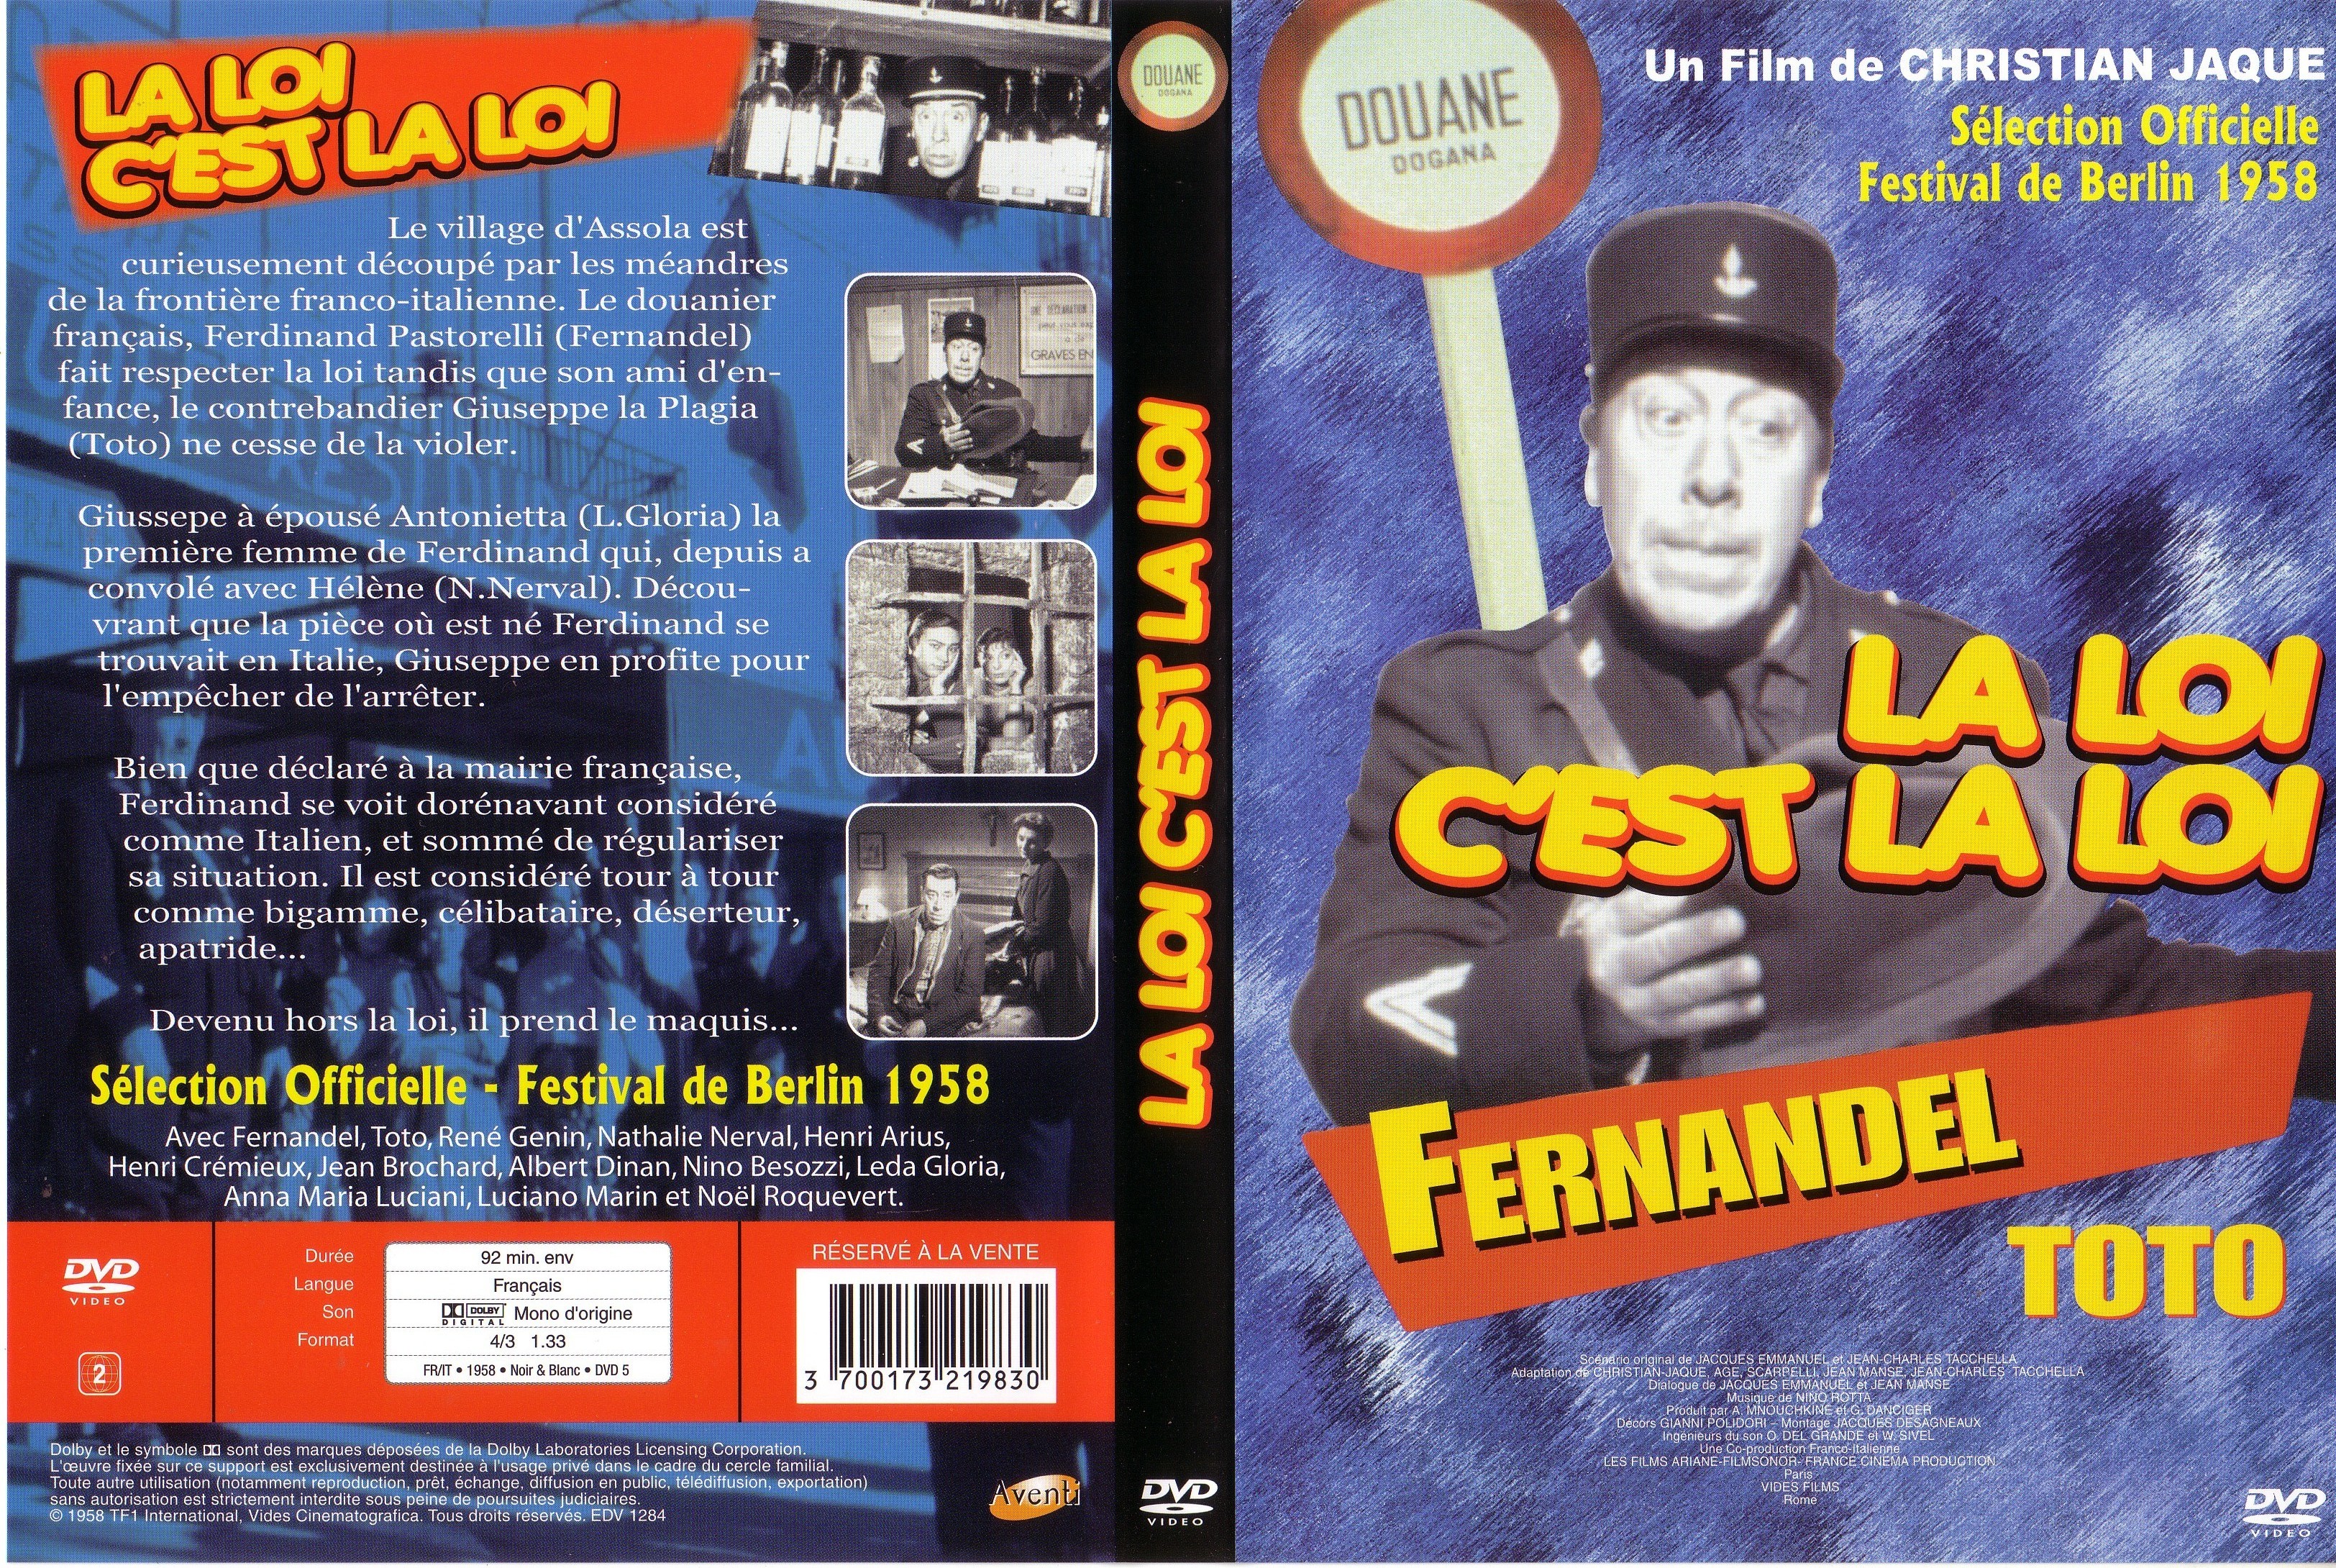 Jaquette DVD La loi c